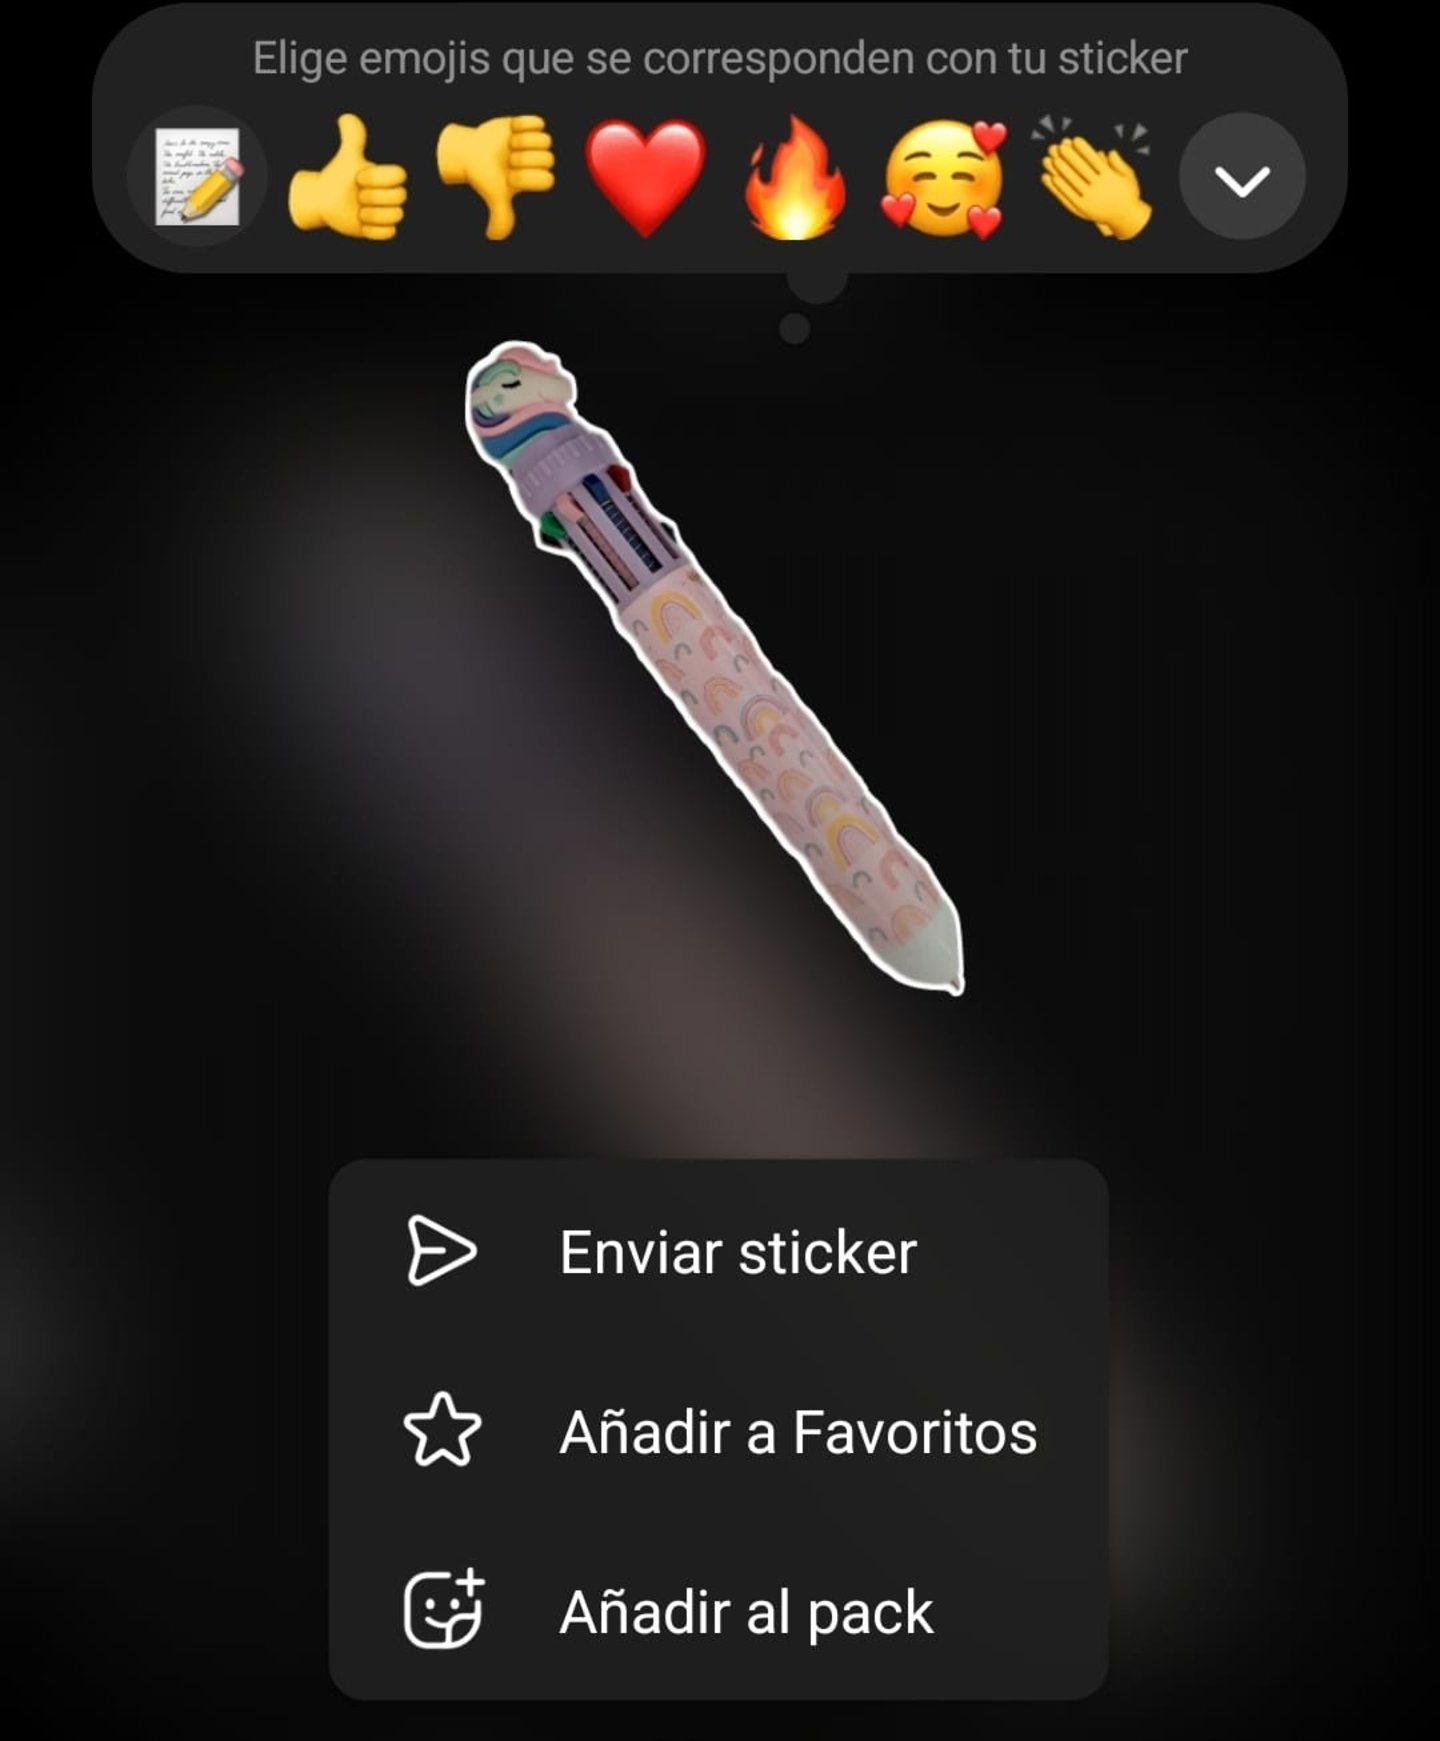 Botón para añadir tu nuevo sticker a un pack